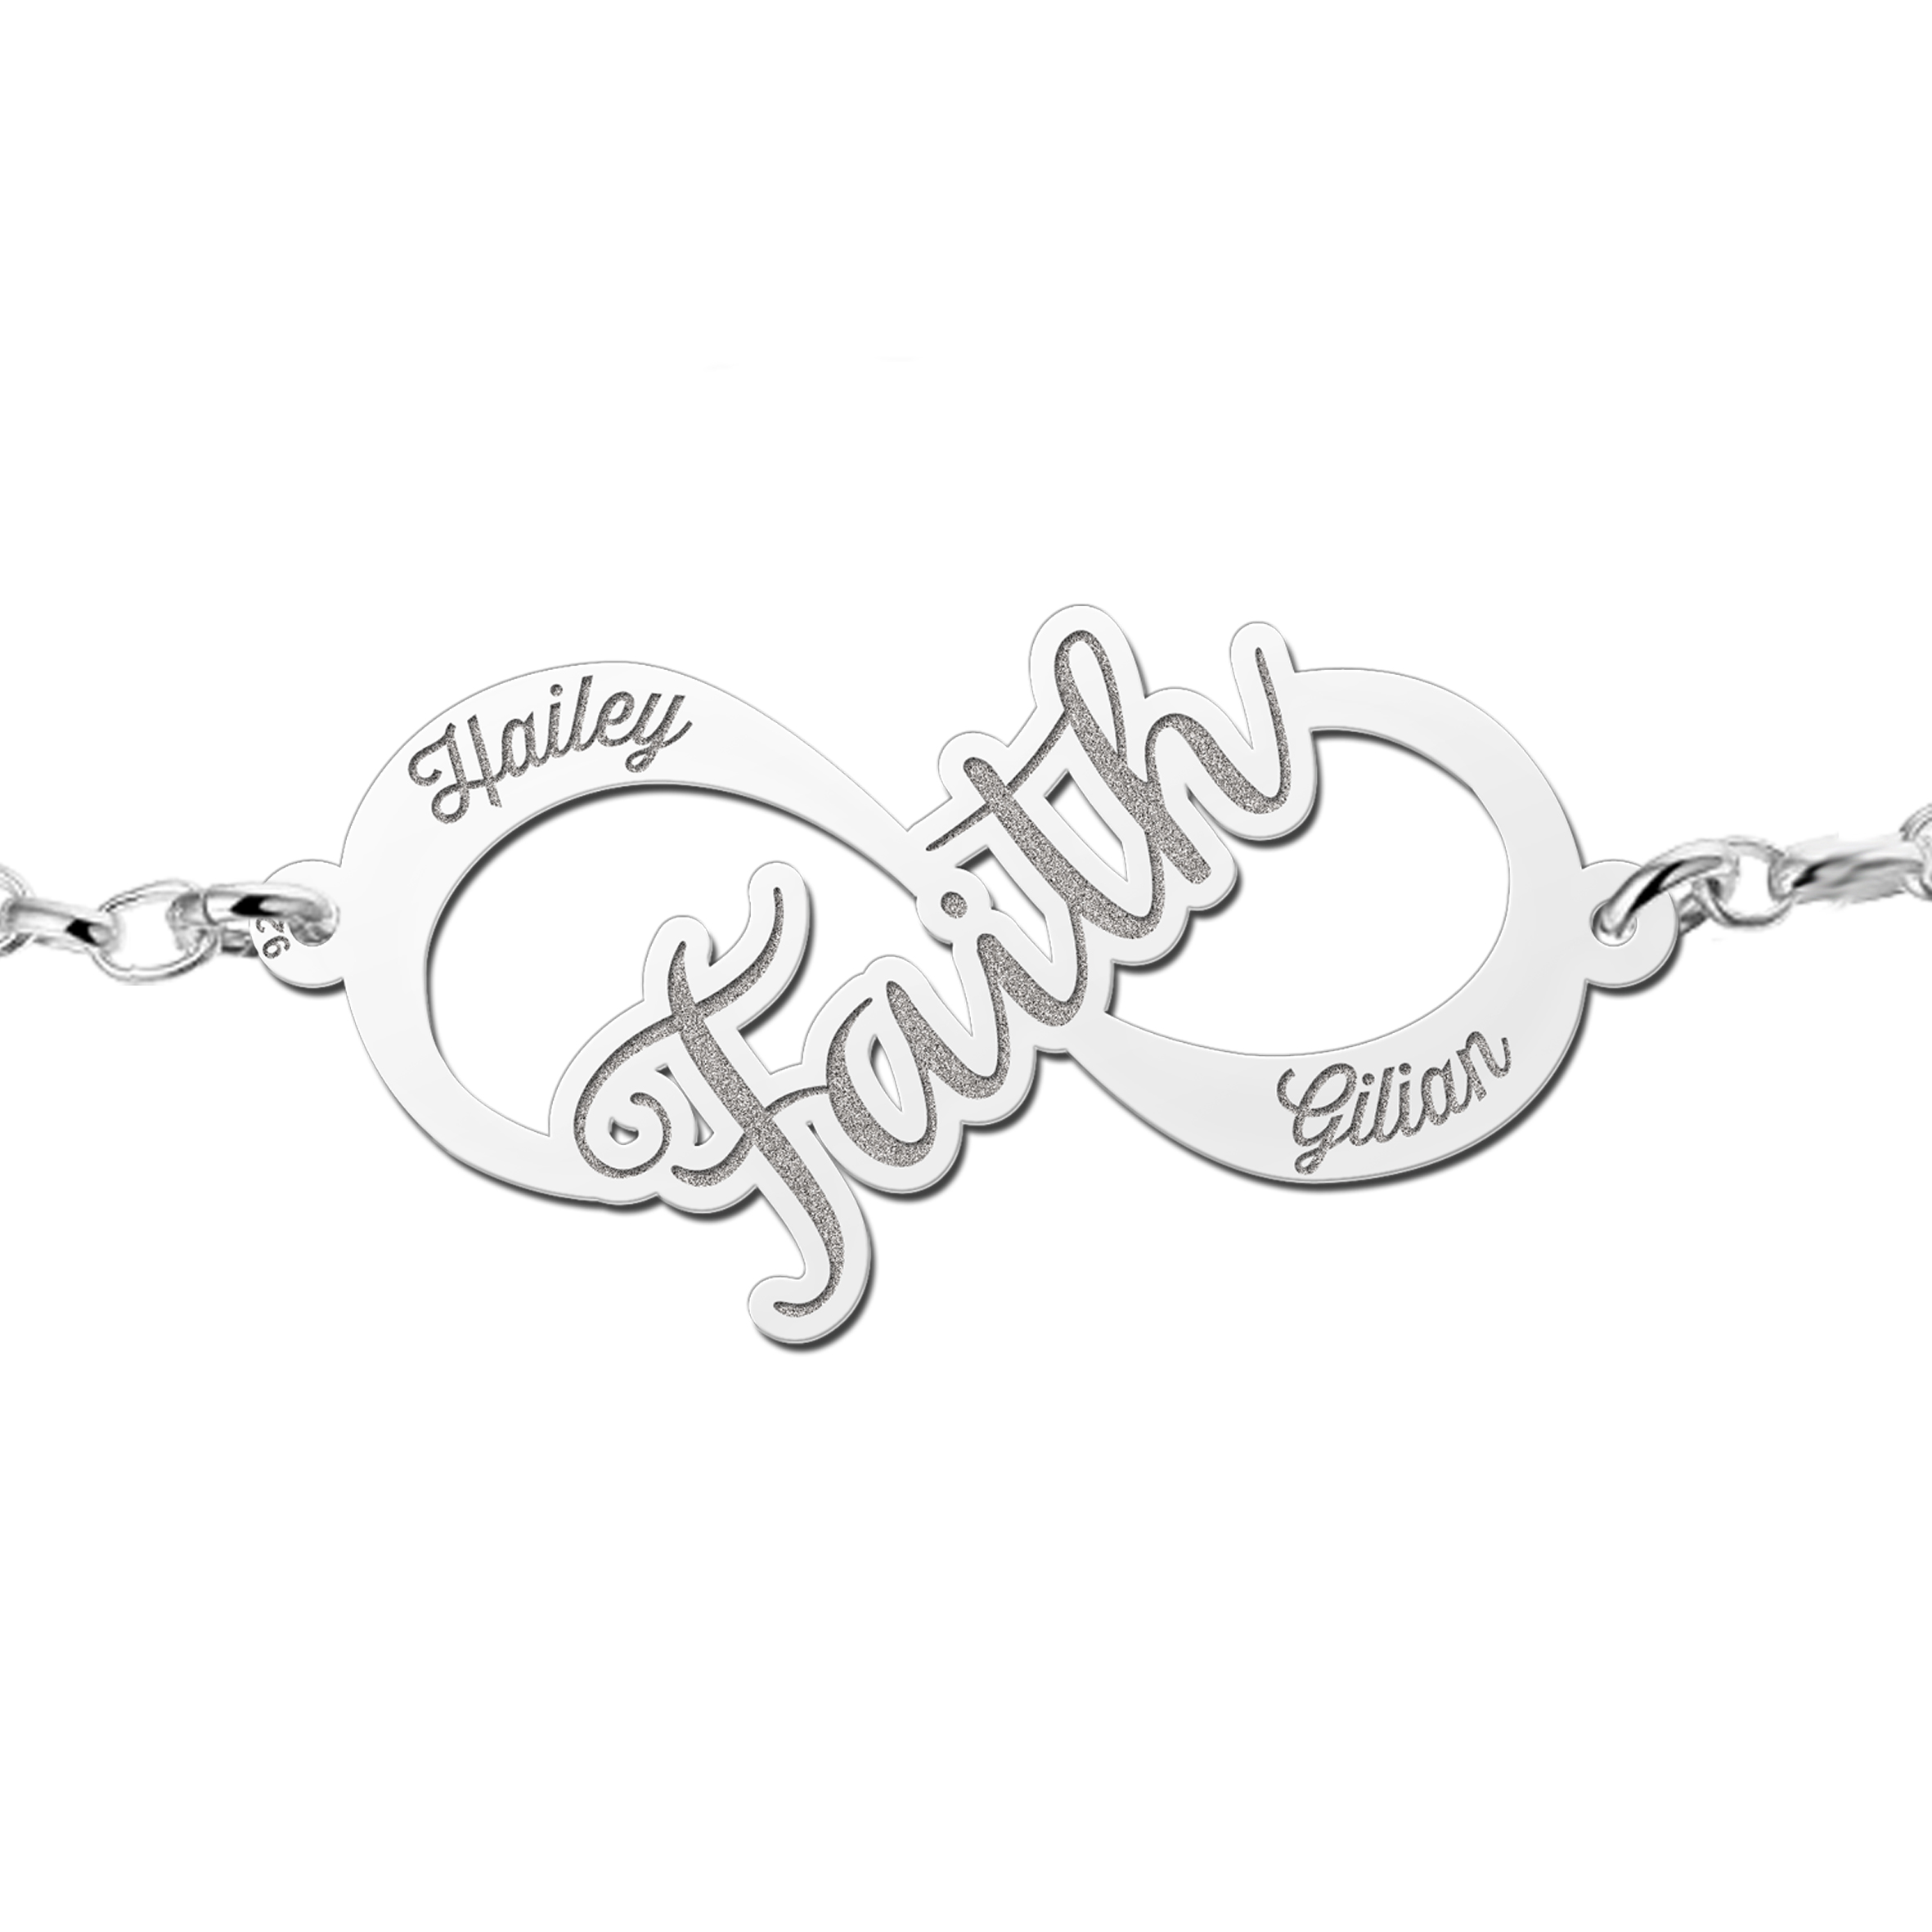 Silver Infinity bracelet Faith